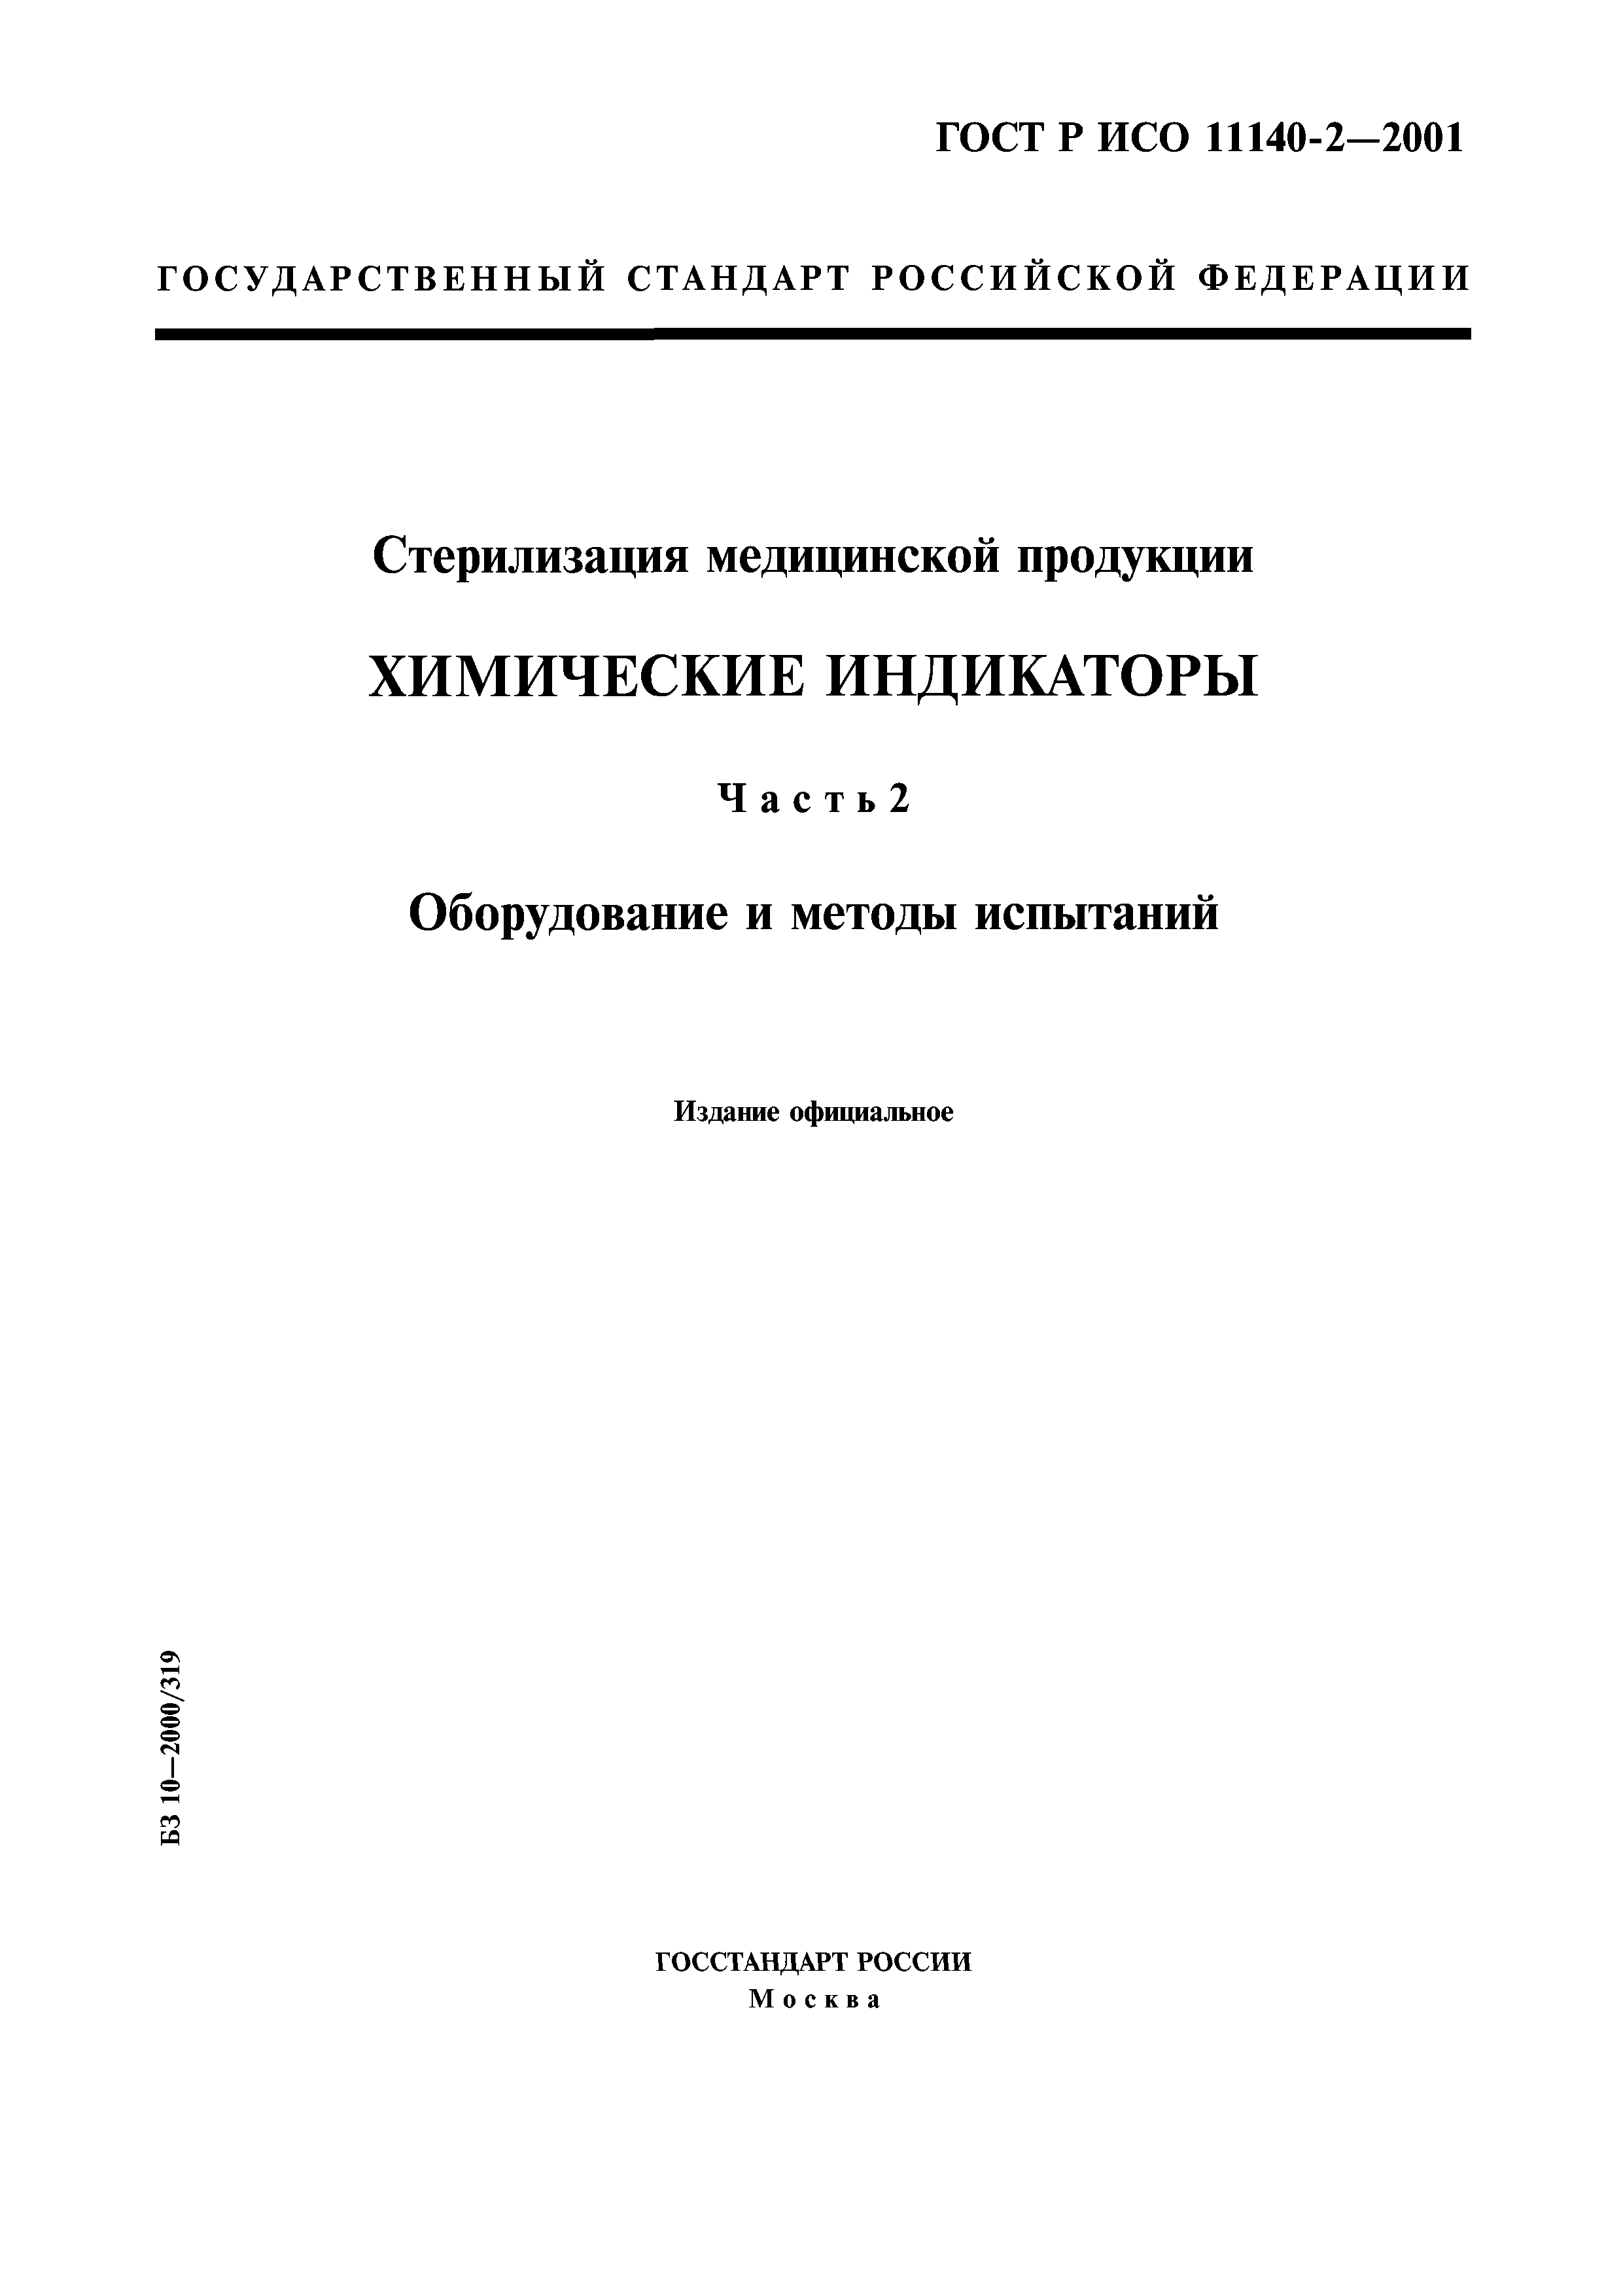 ГОСТ Р ИСО 11140-2-2001